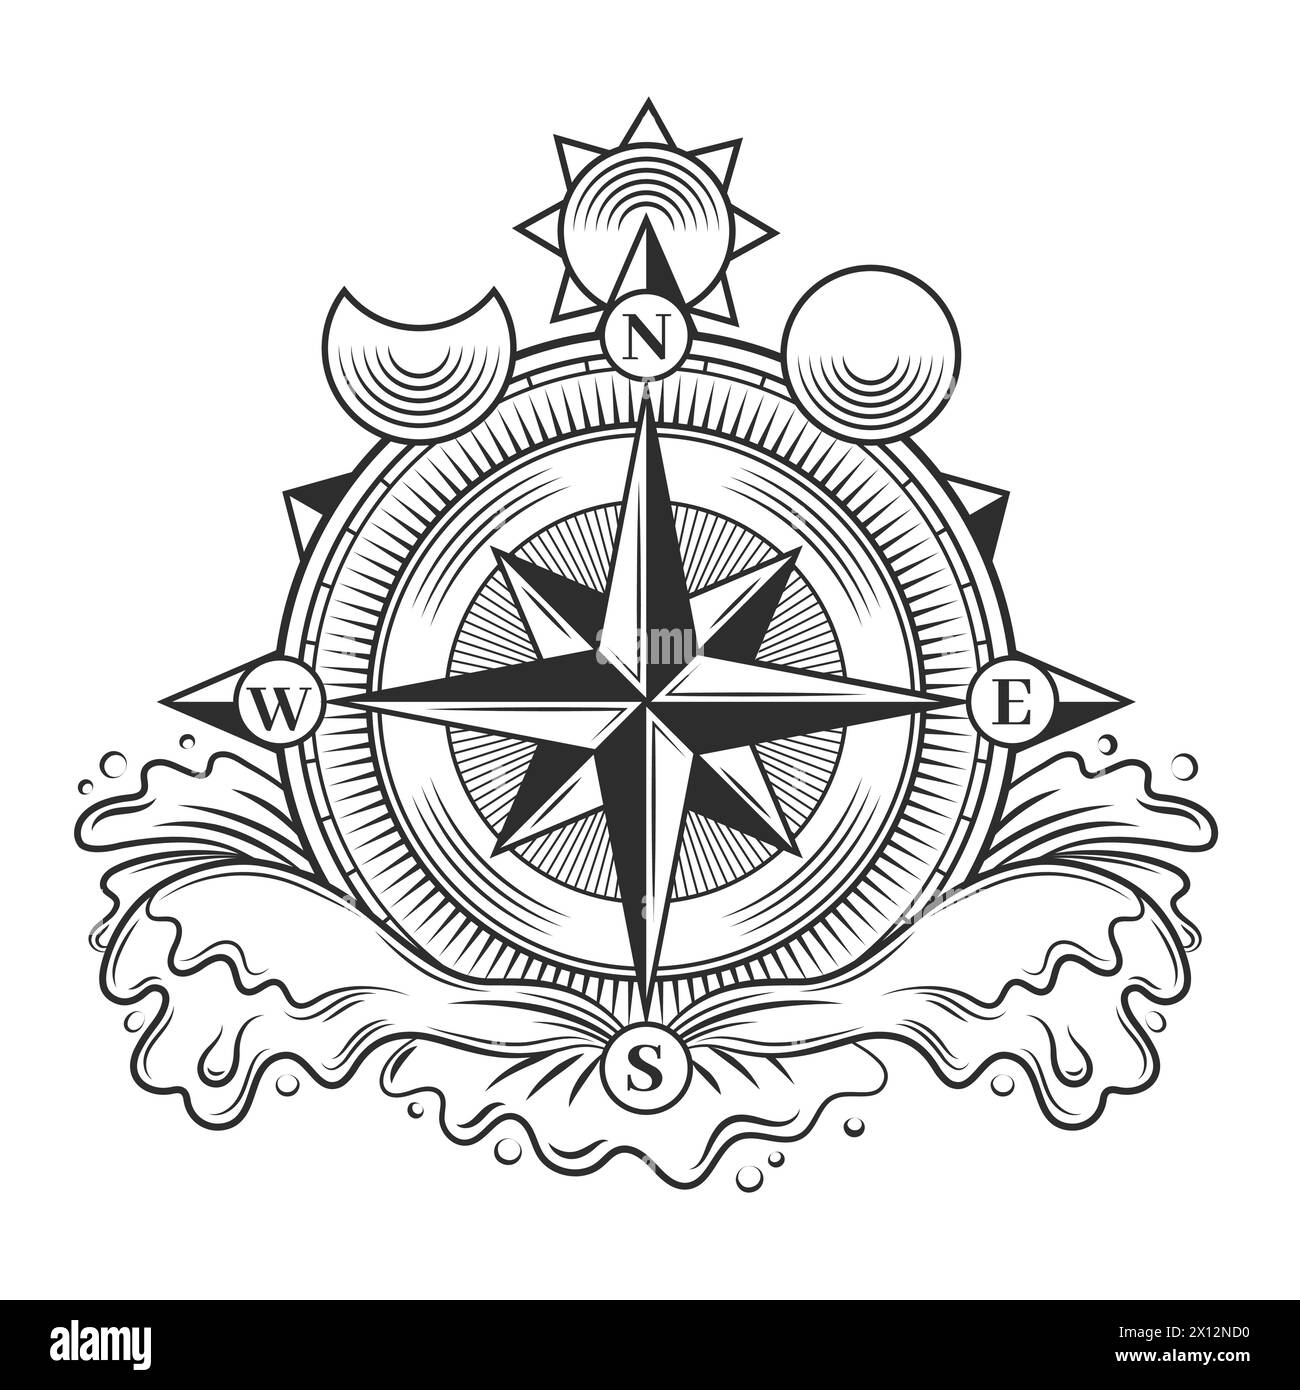 Tatouage boussole. Amulette astrologique noire minimaliste avec flèche et étoiles de lune du soleil, panneau de direction moderne d'orientation. Ensemble isolé de vecteur Illustration de Vecteur